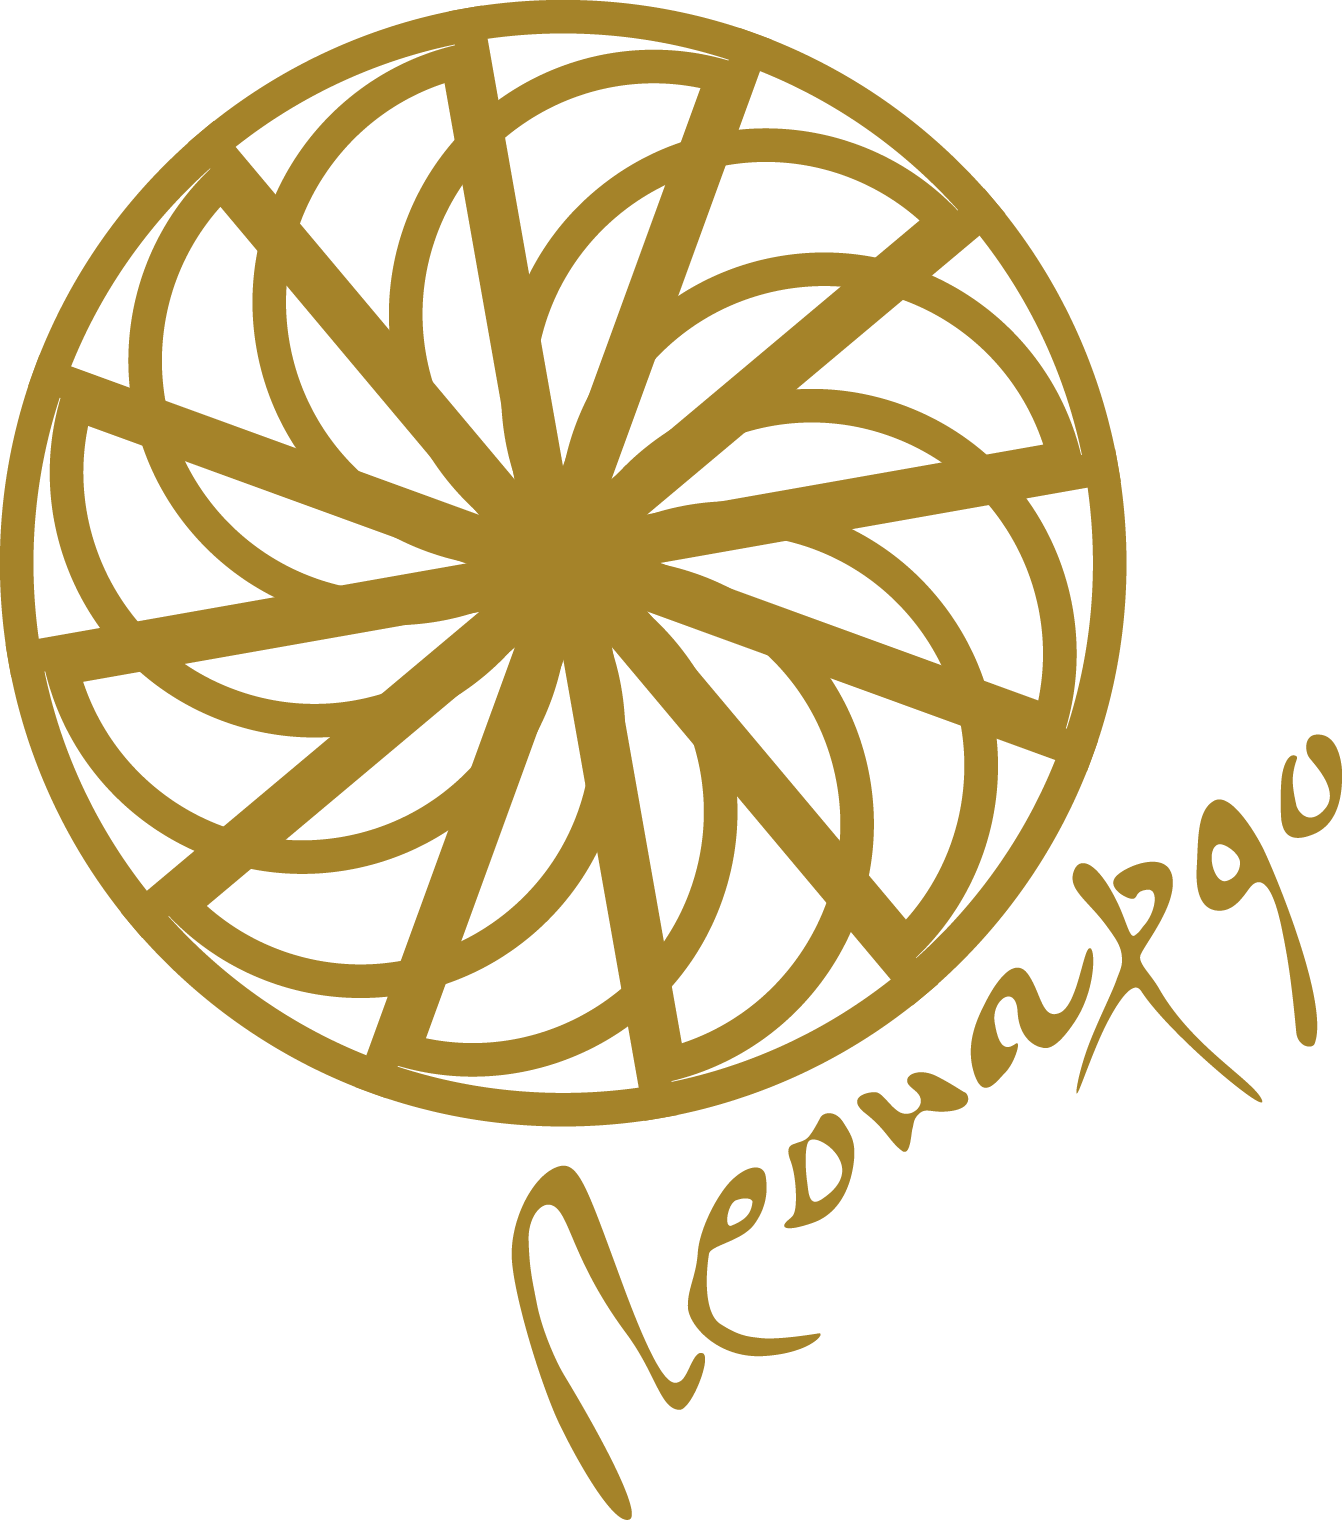 Leonardo Logo